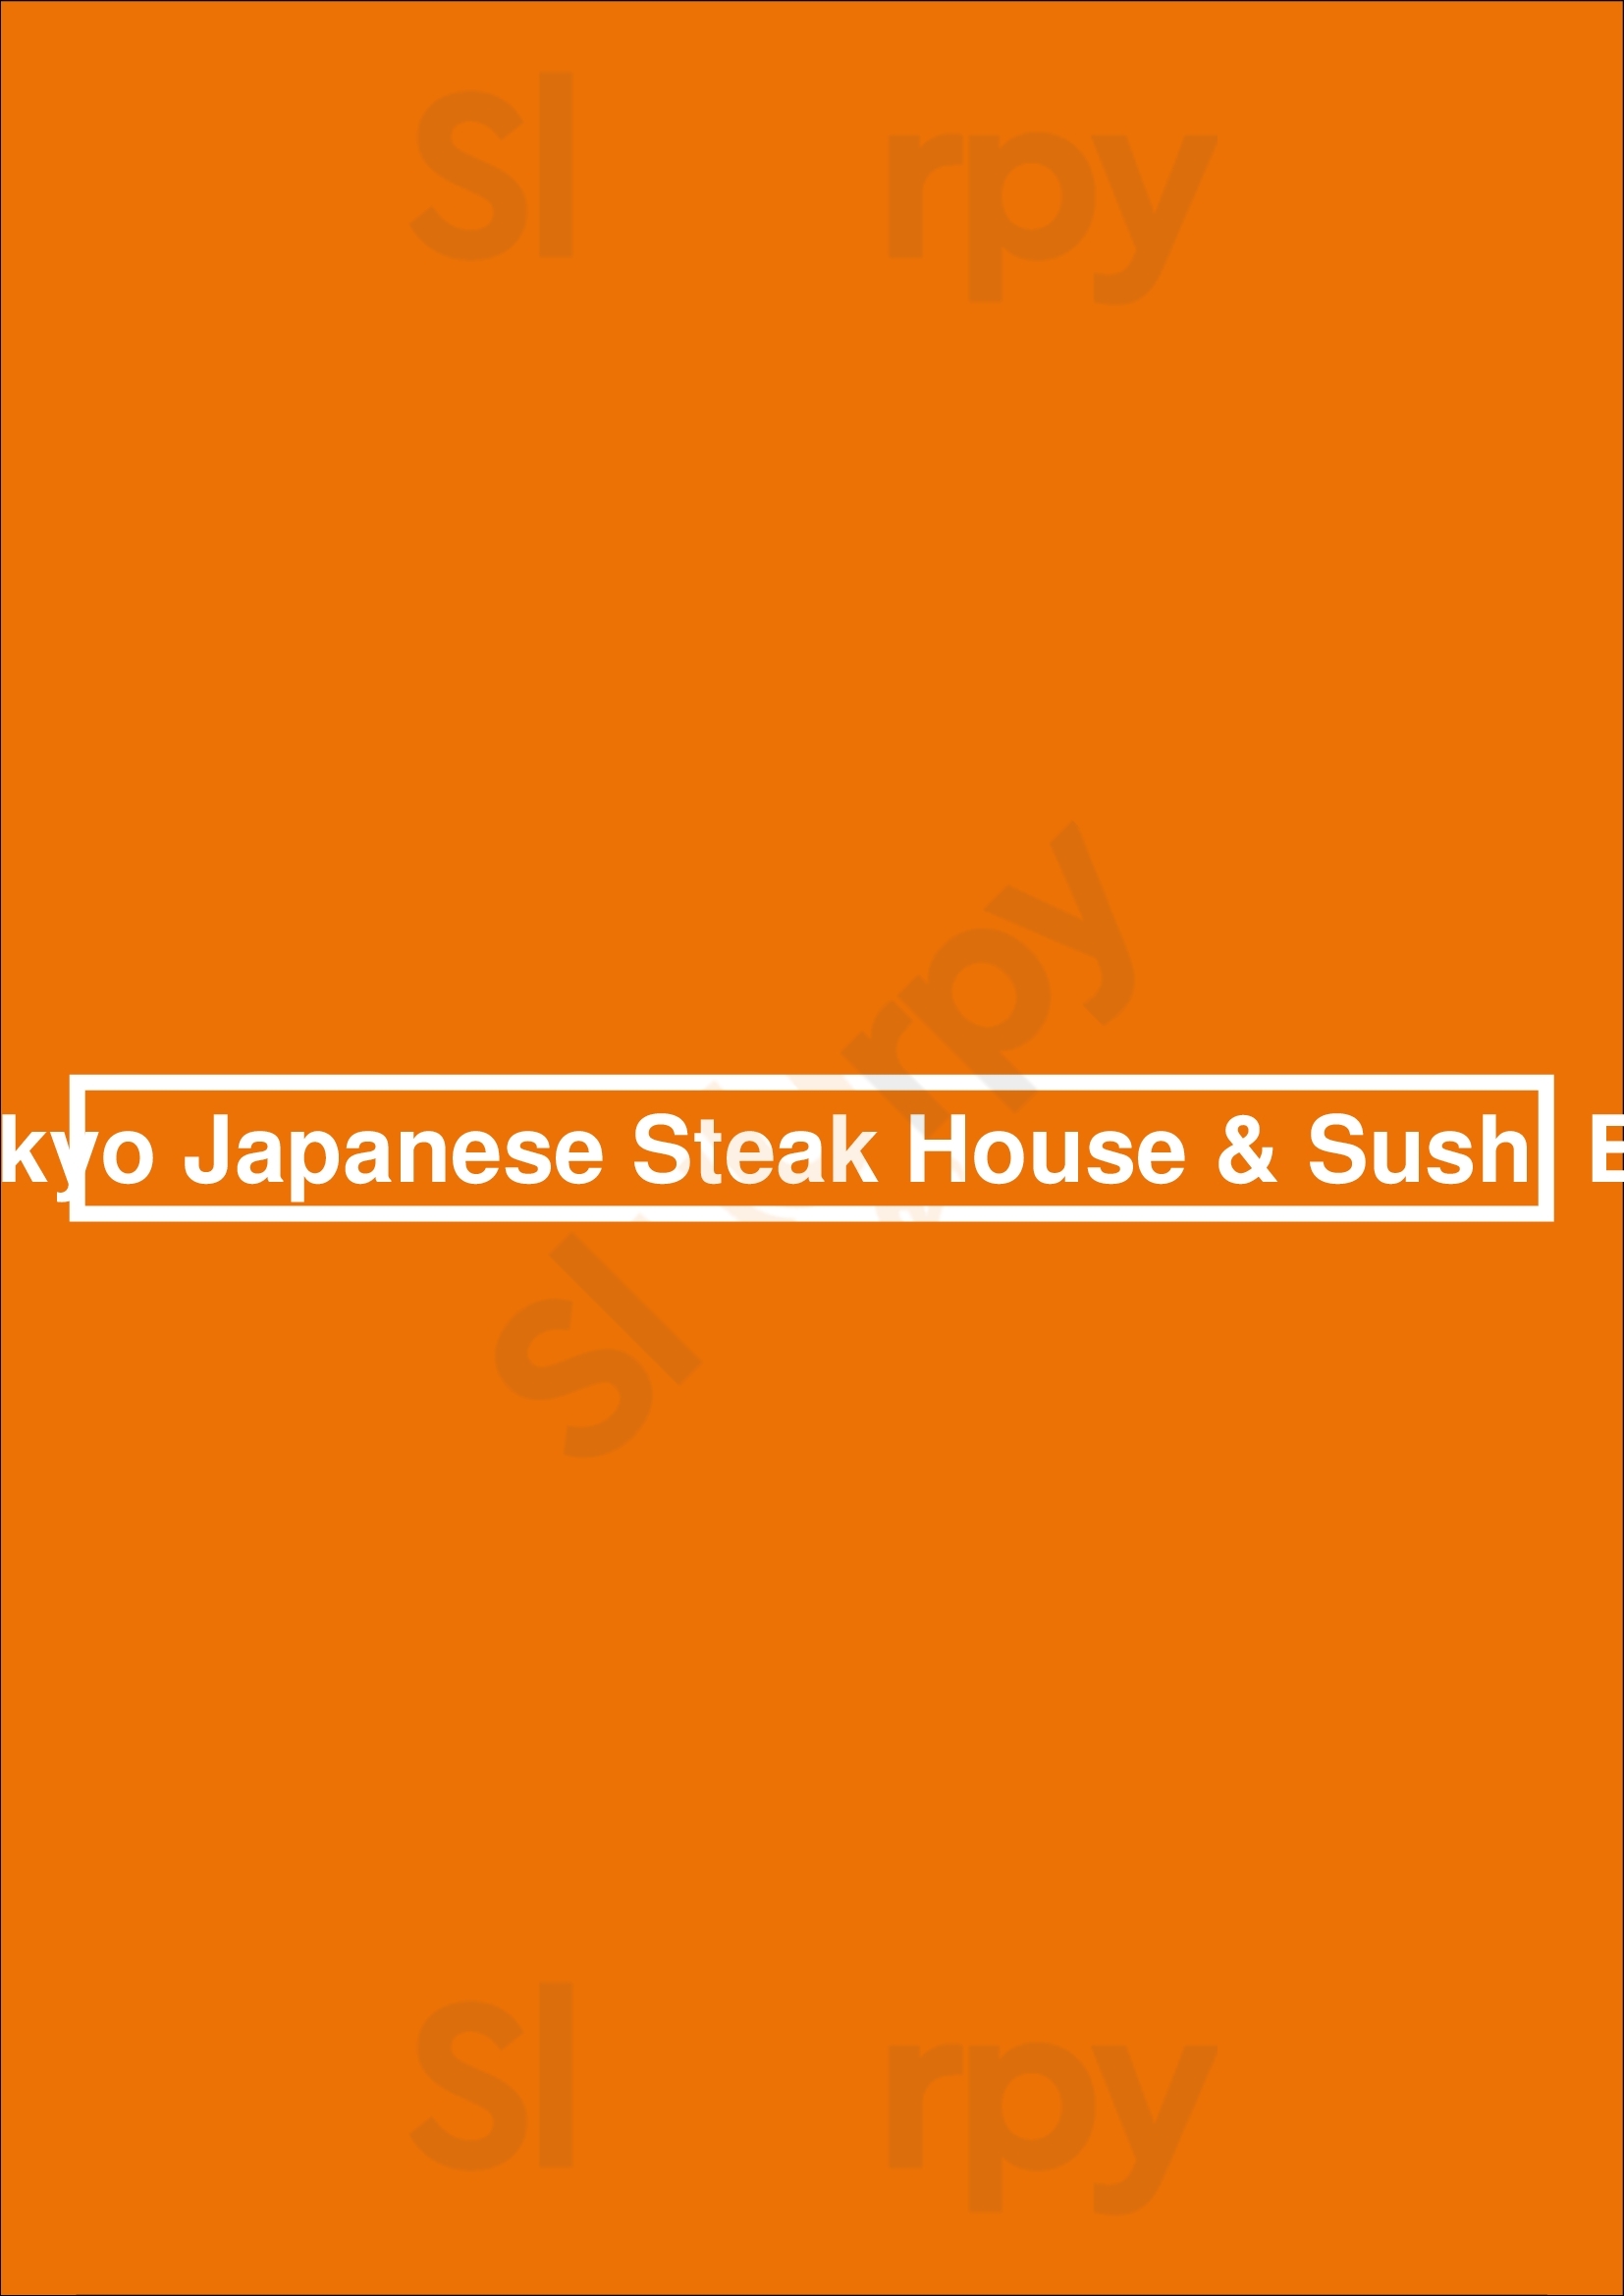 Tokyo Japanese Steak House & Sushi Bar Salem Menu - 1